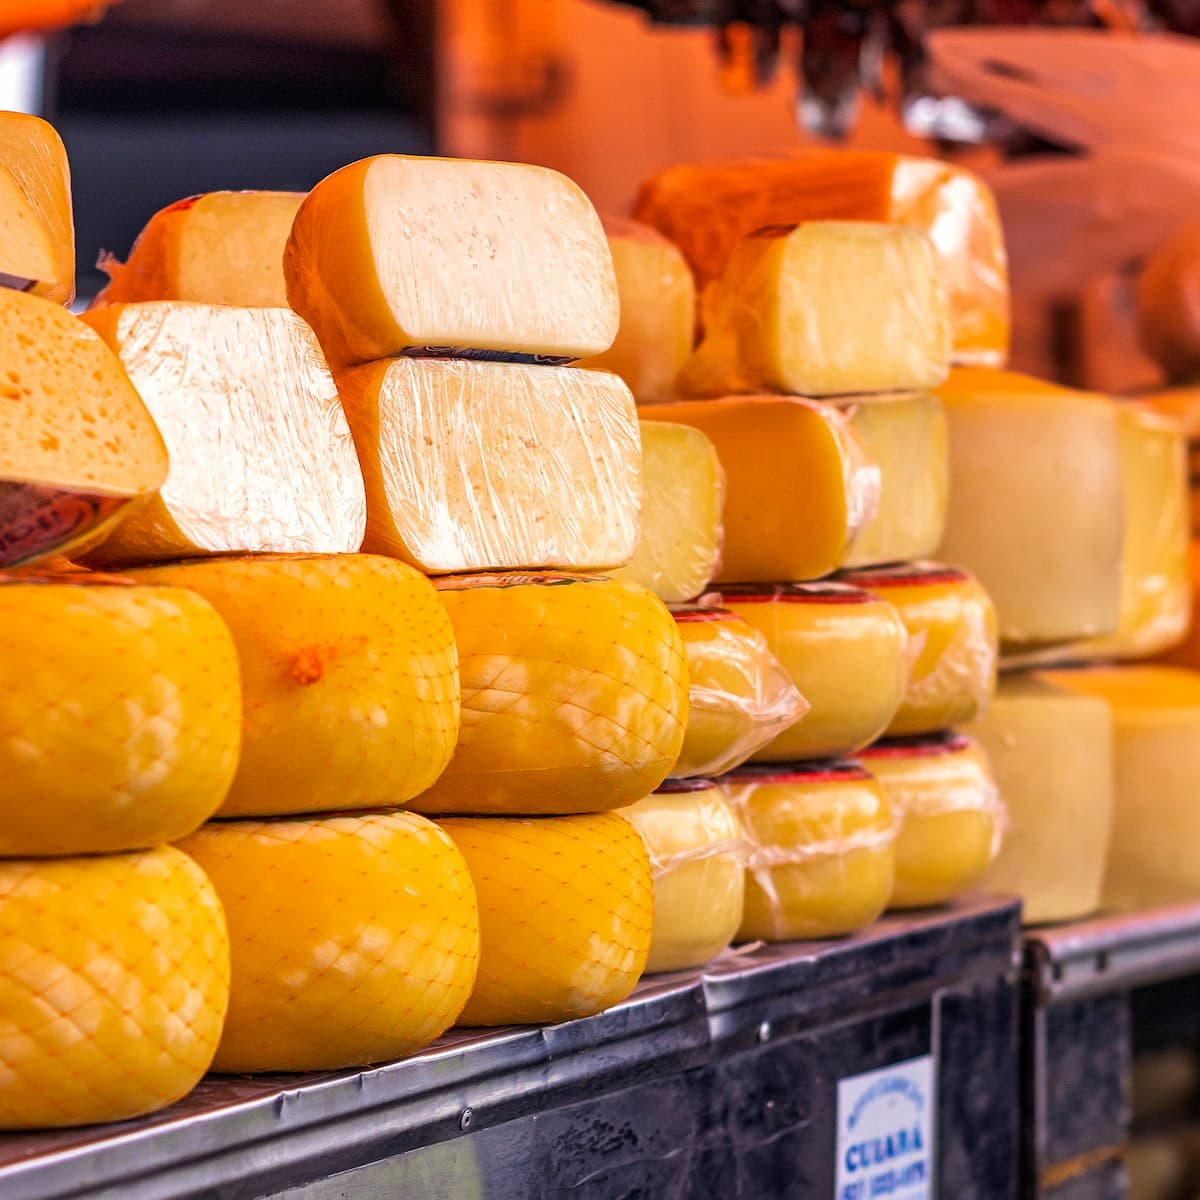 Imagen meramente ilustrativa de los quesos, producido en una queijaria. Fotografía: Leandro Bezerra.